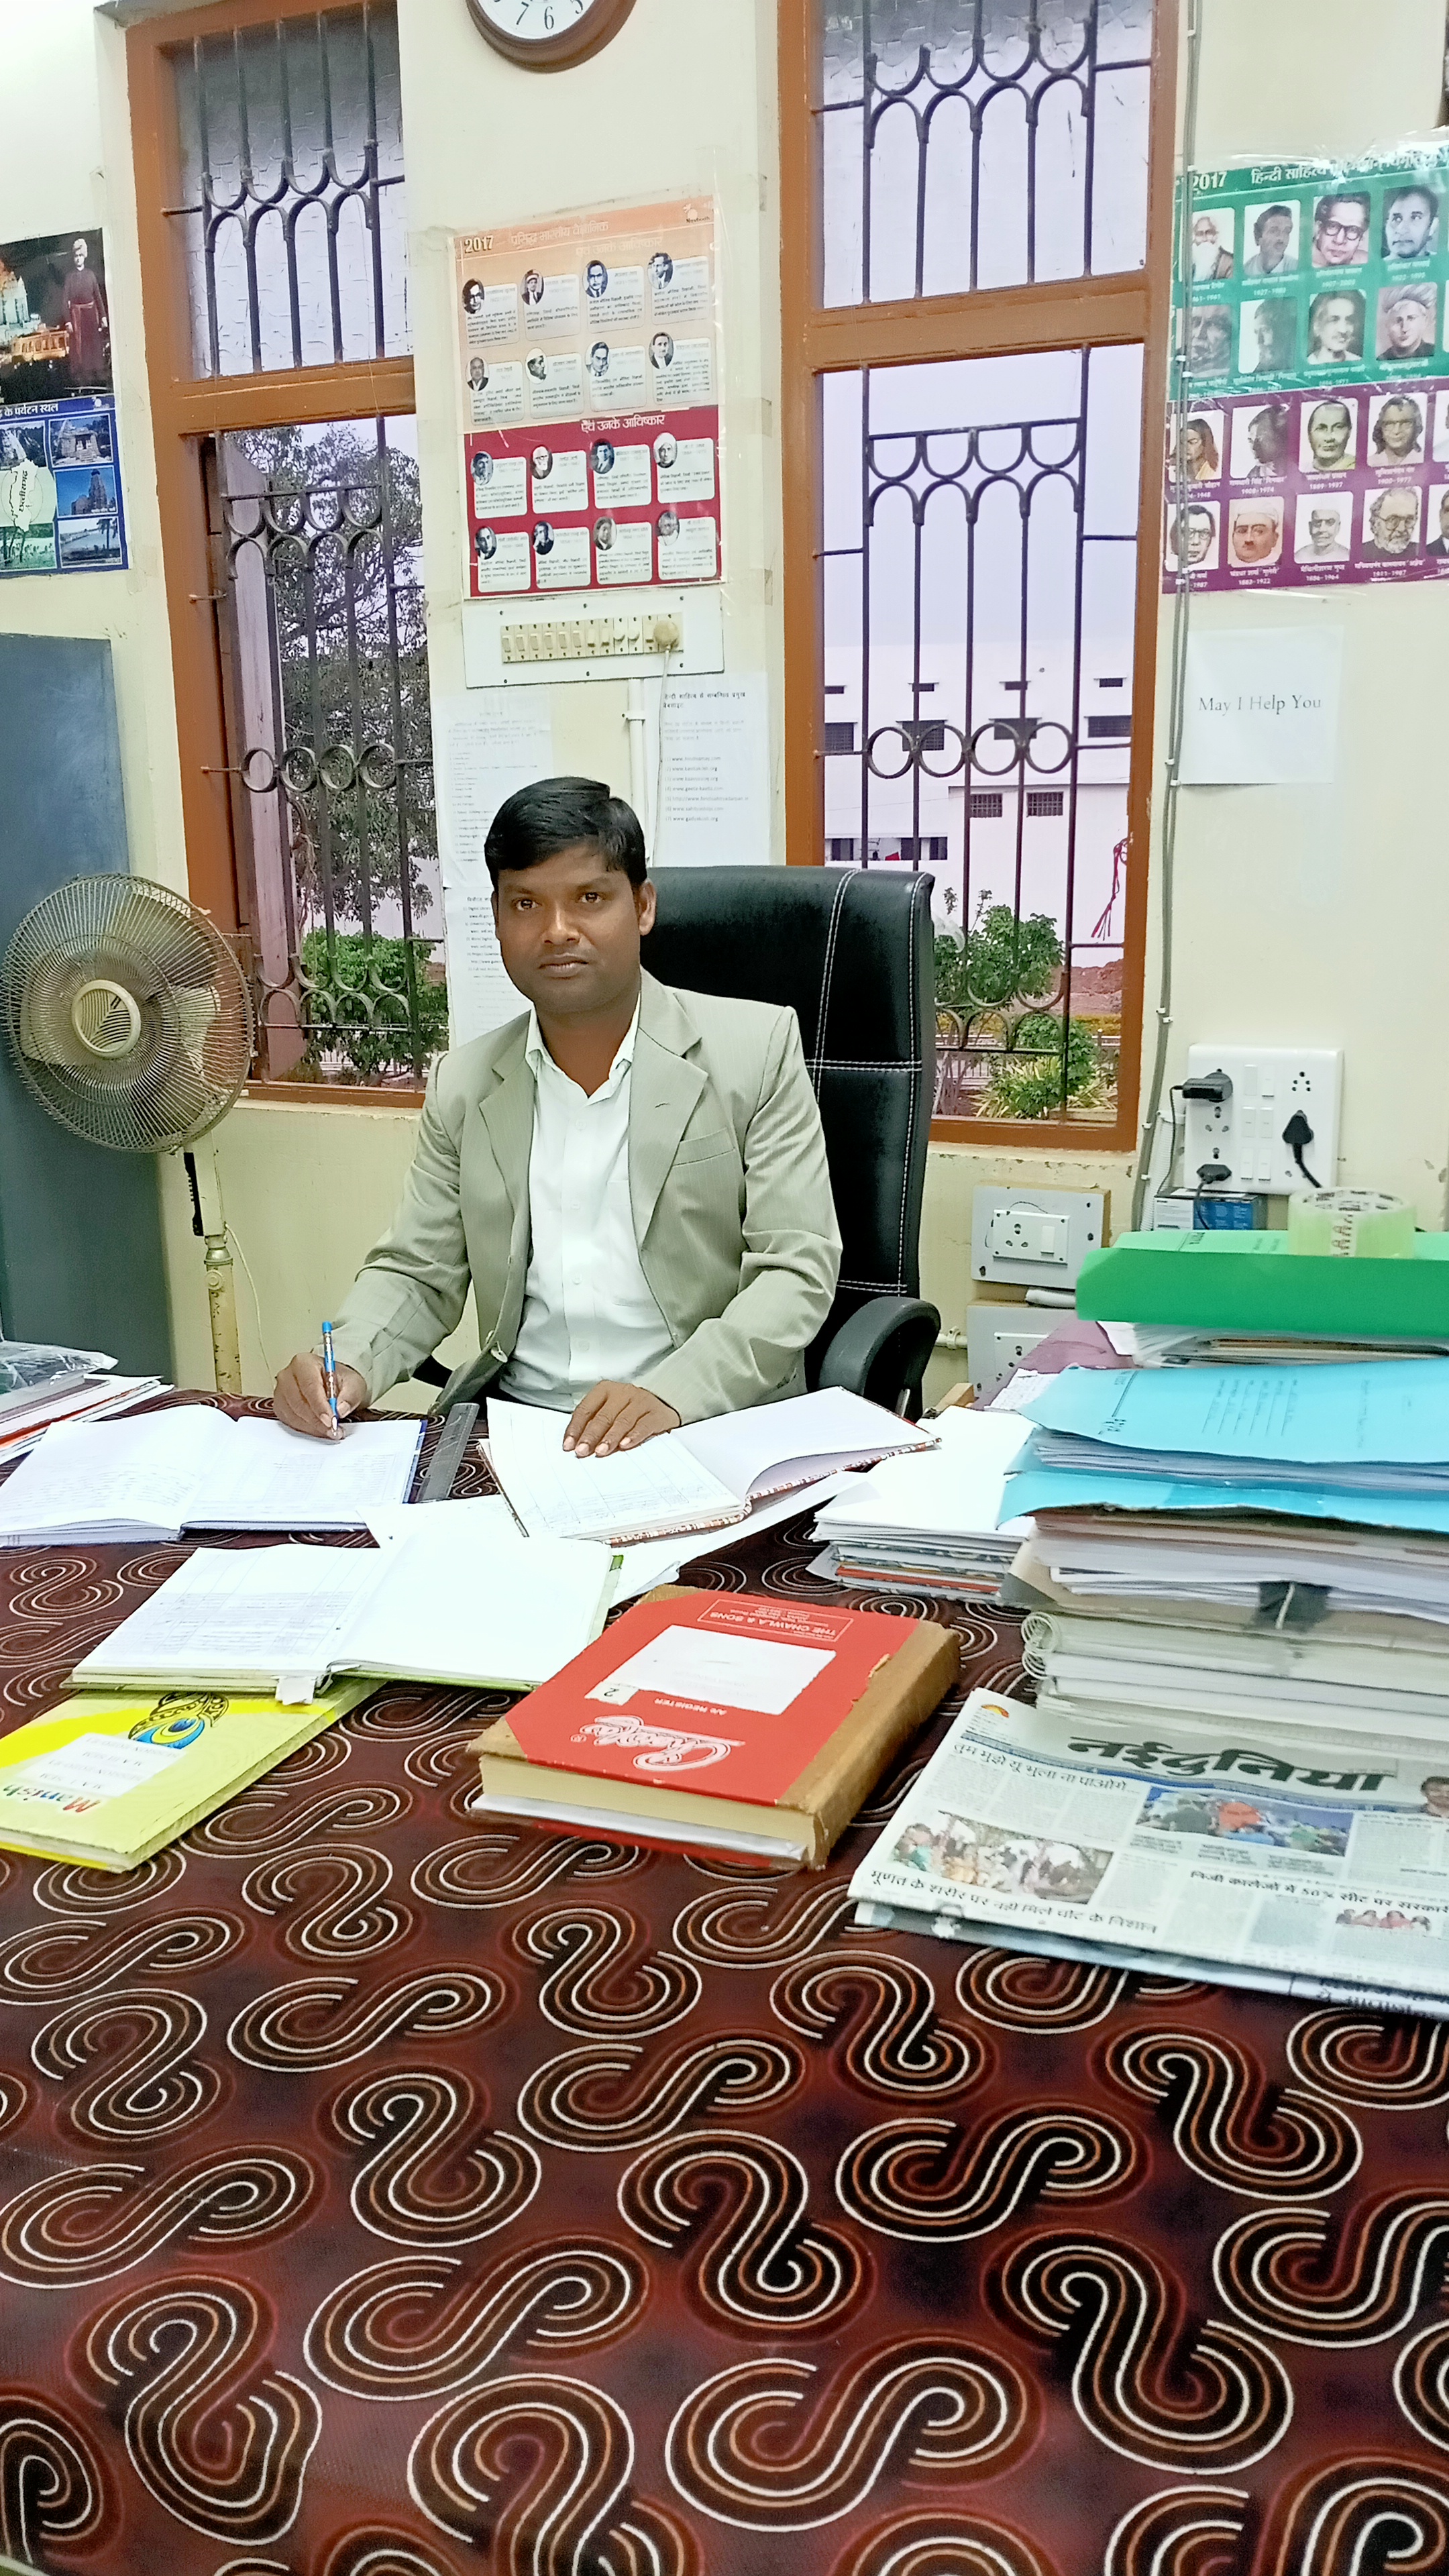 Mr. Sanjay Kumar Patel